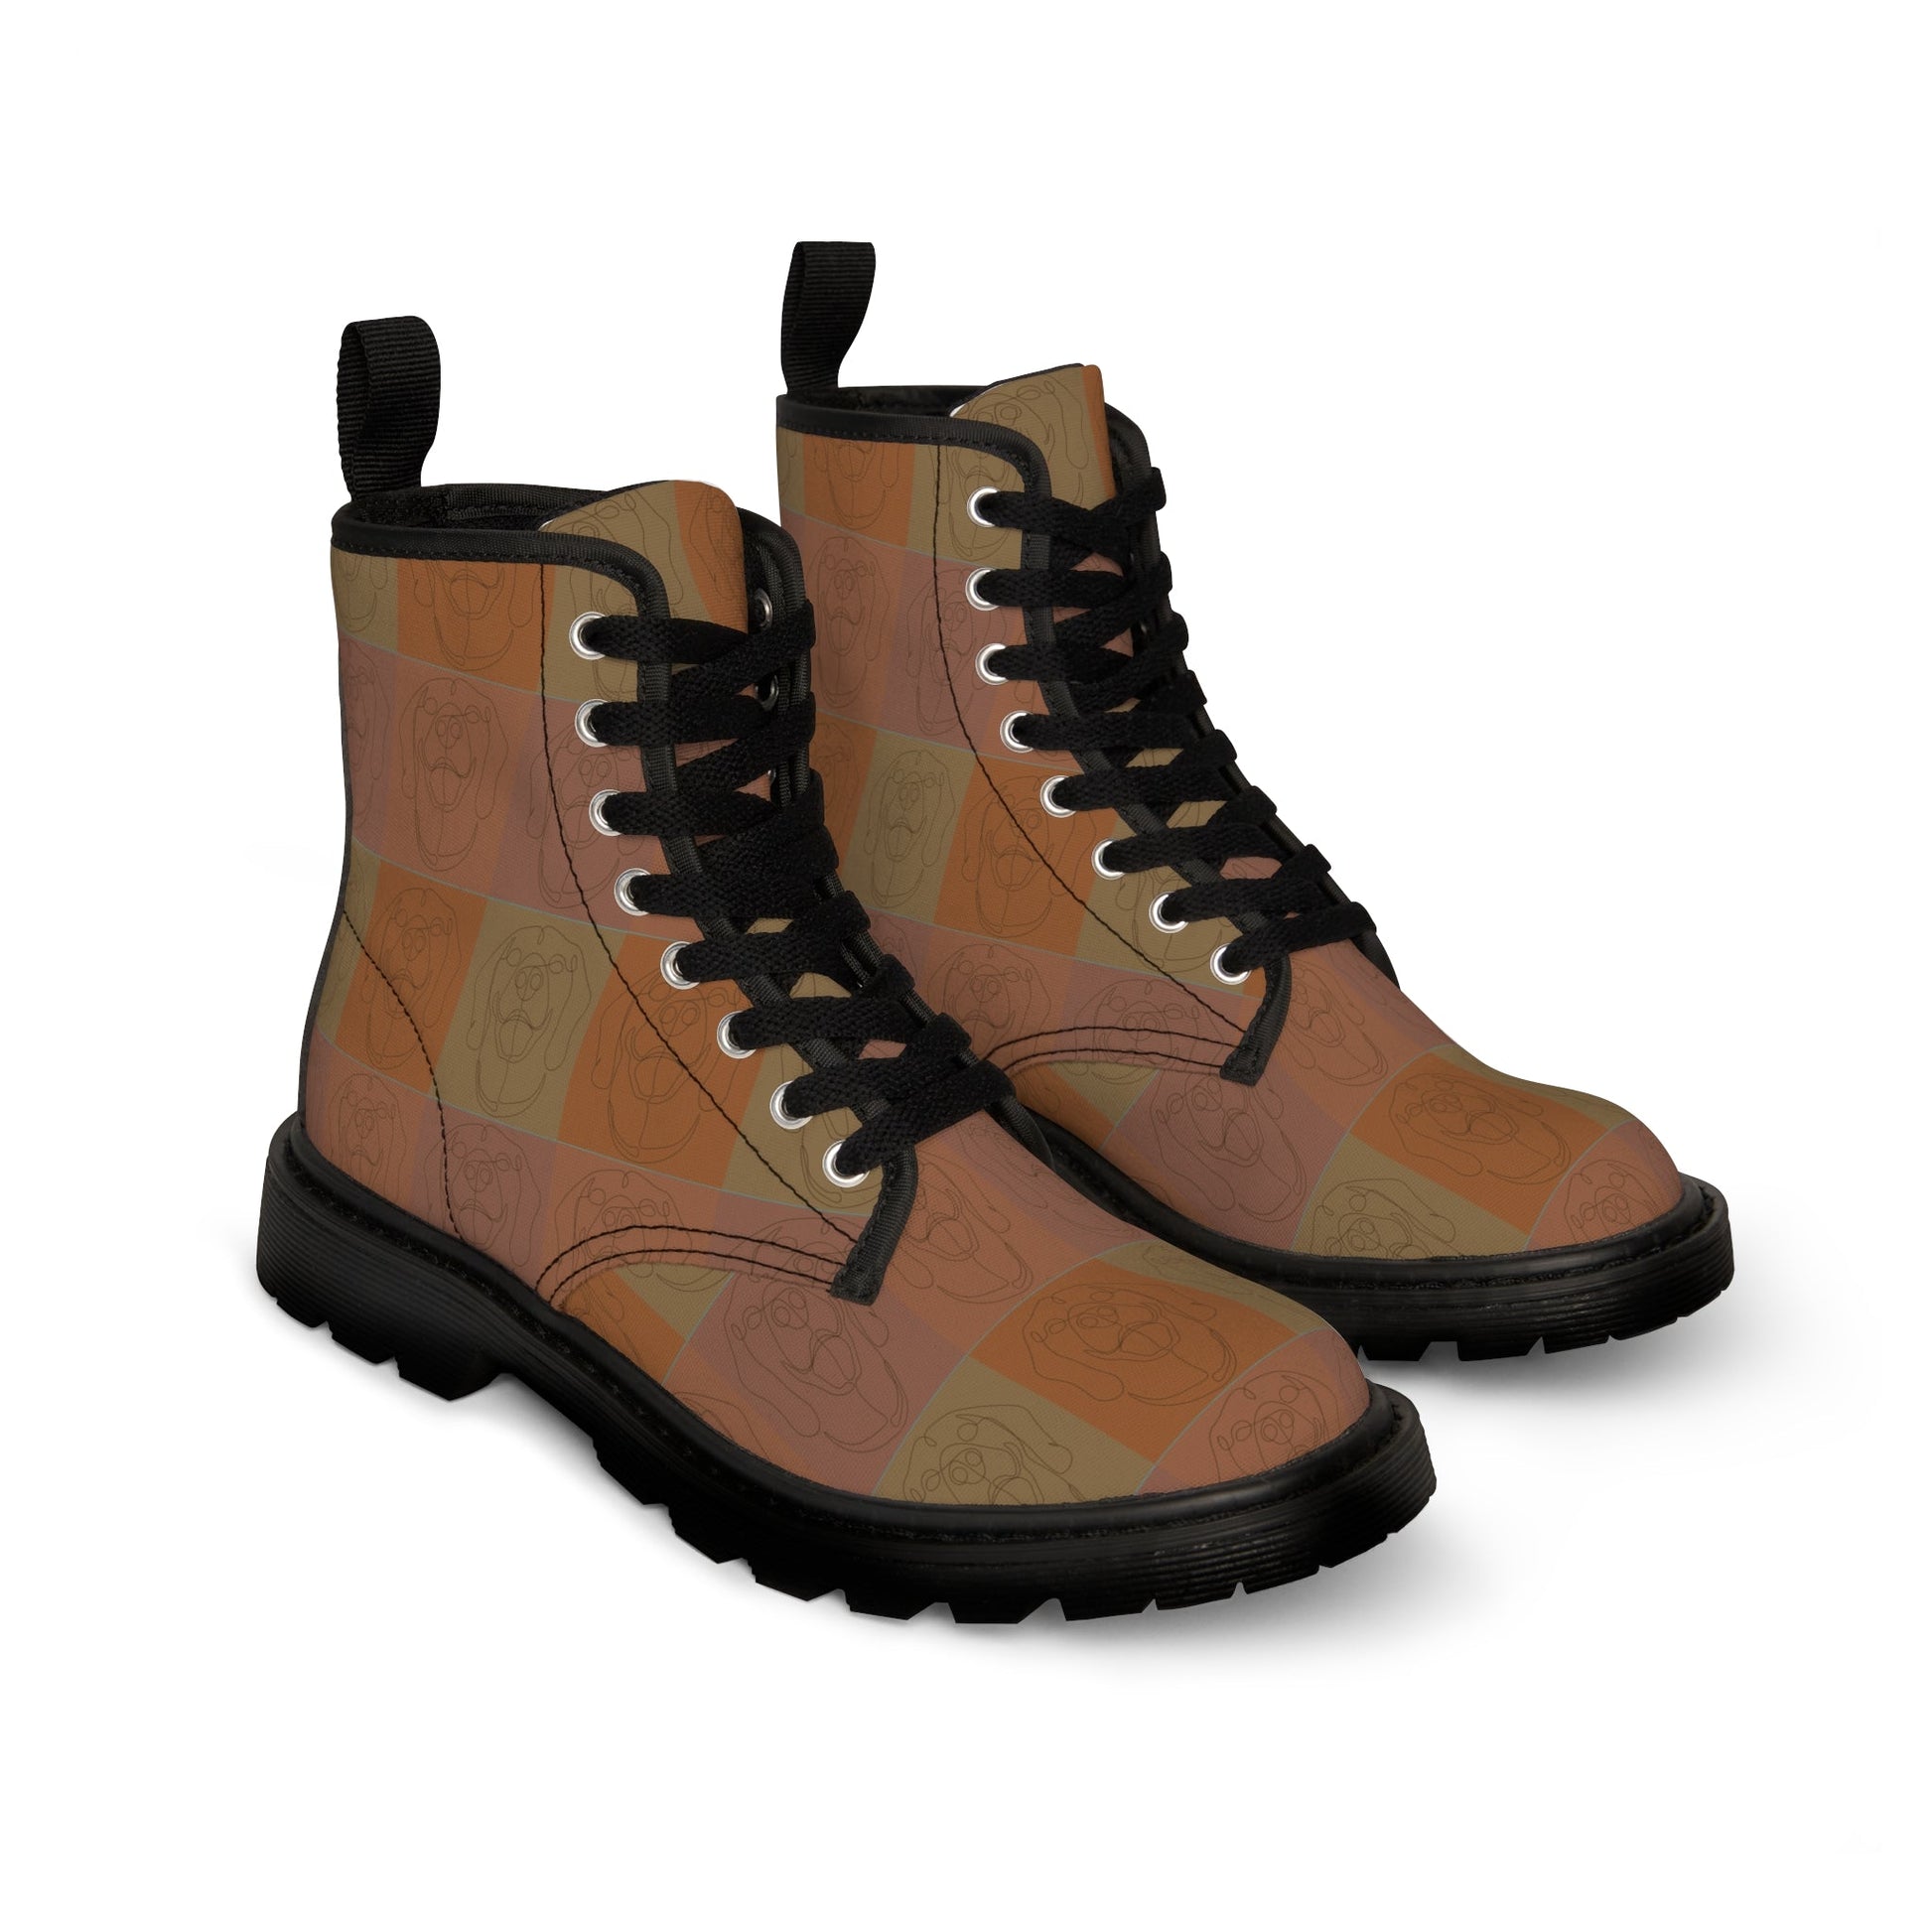 Women's Canvas Boots featuring a Rhodesian Ridgeback tile effect design [Light Brown] - Hobbster